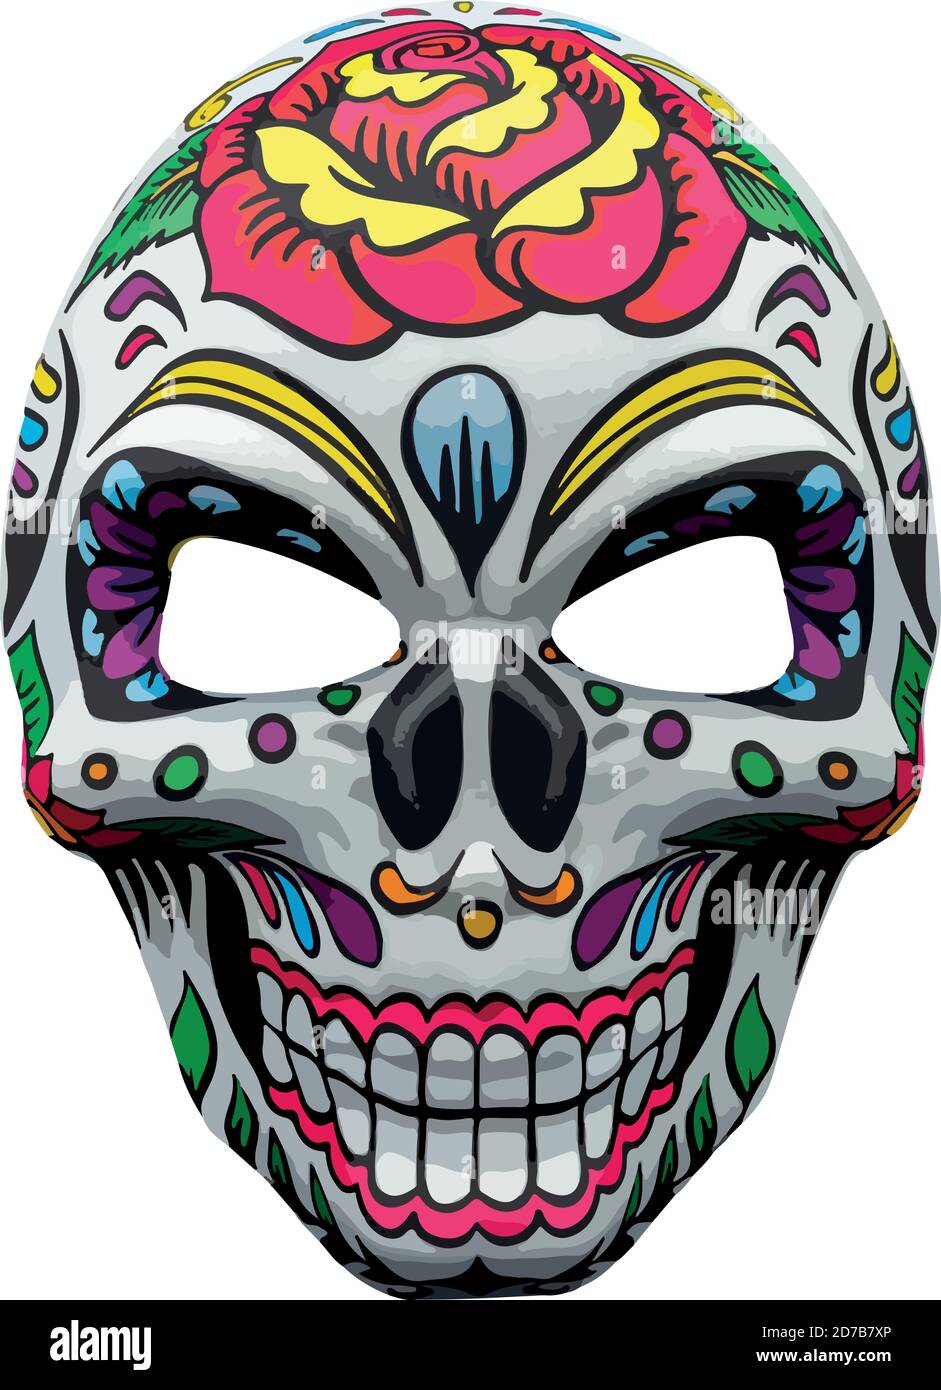 Halloween Maske, die einen traditionellen mexikanischen Schädel mit bunten Blumenmuster darstellt. Stock Vektor